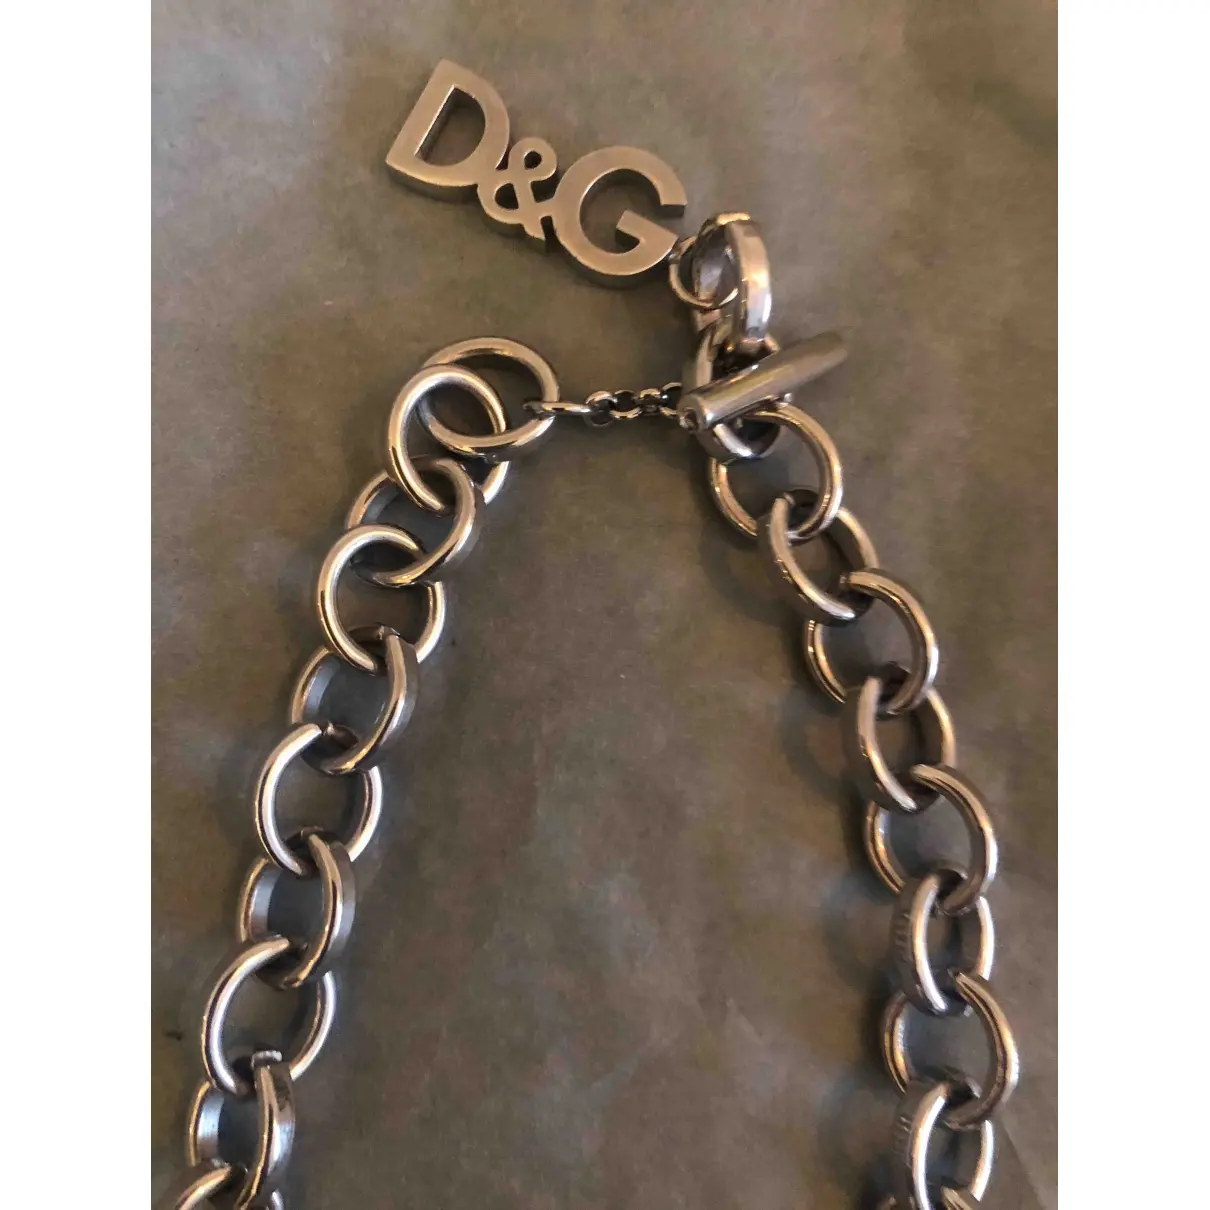 Buy D&G Jewellery online